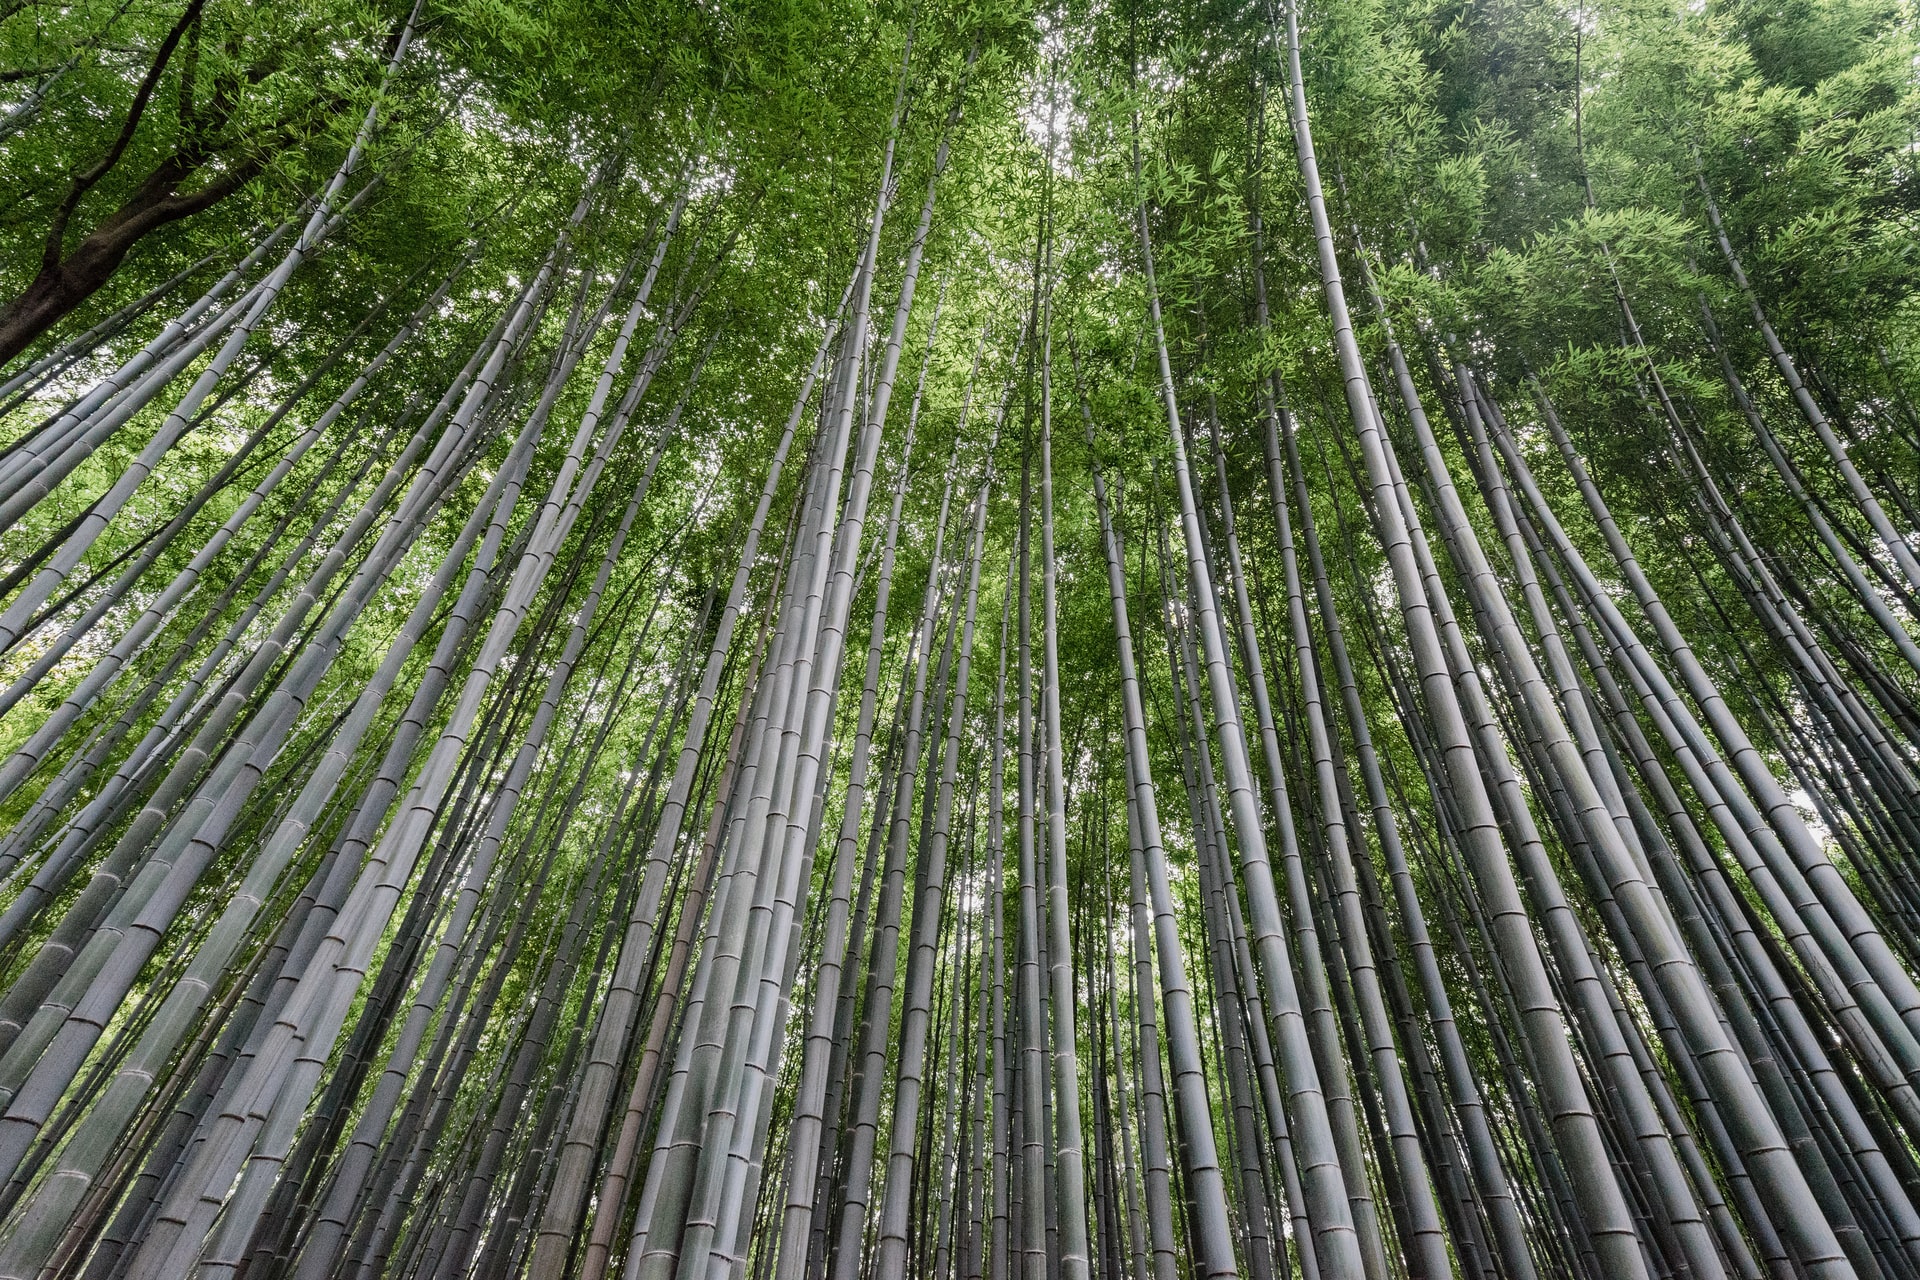 Comment appréhender l'usage du bambou dans la conception et la réalisation d'ossature et de mobilier?